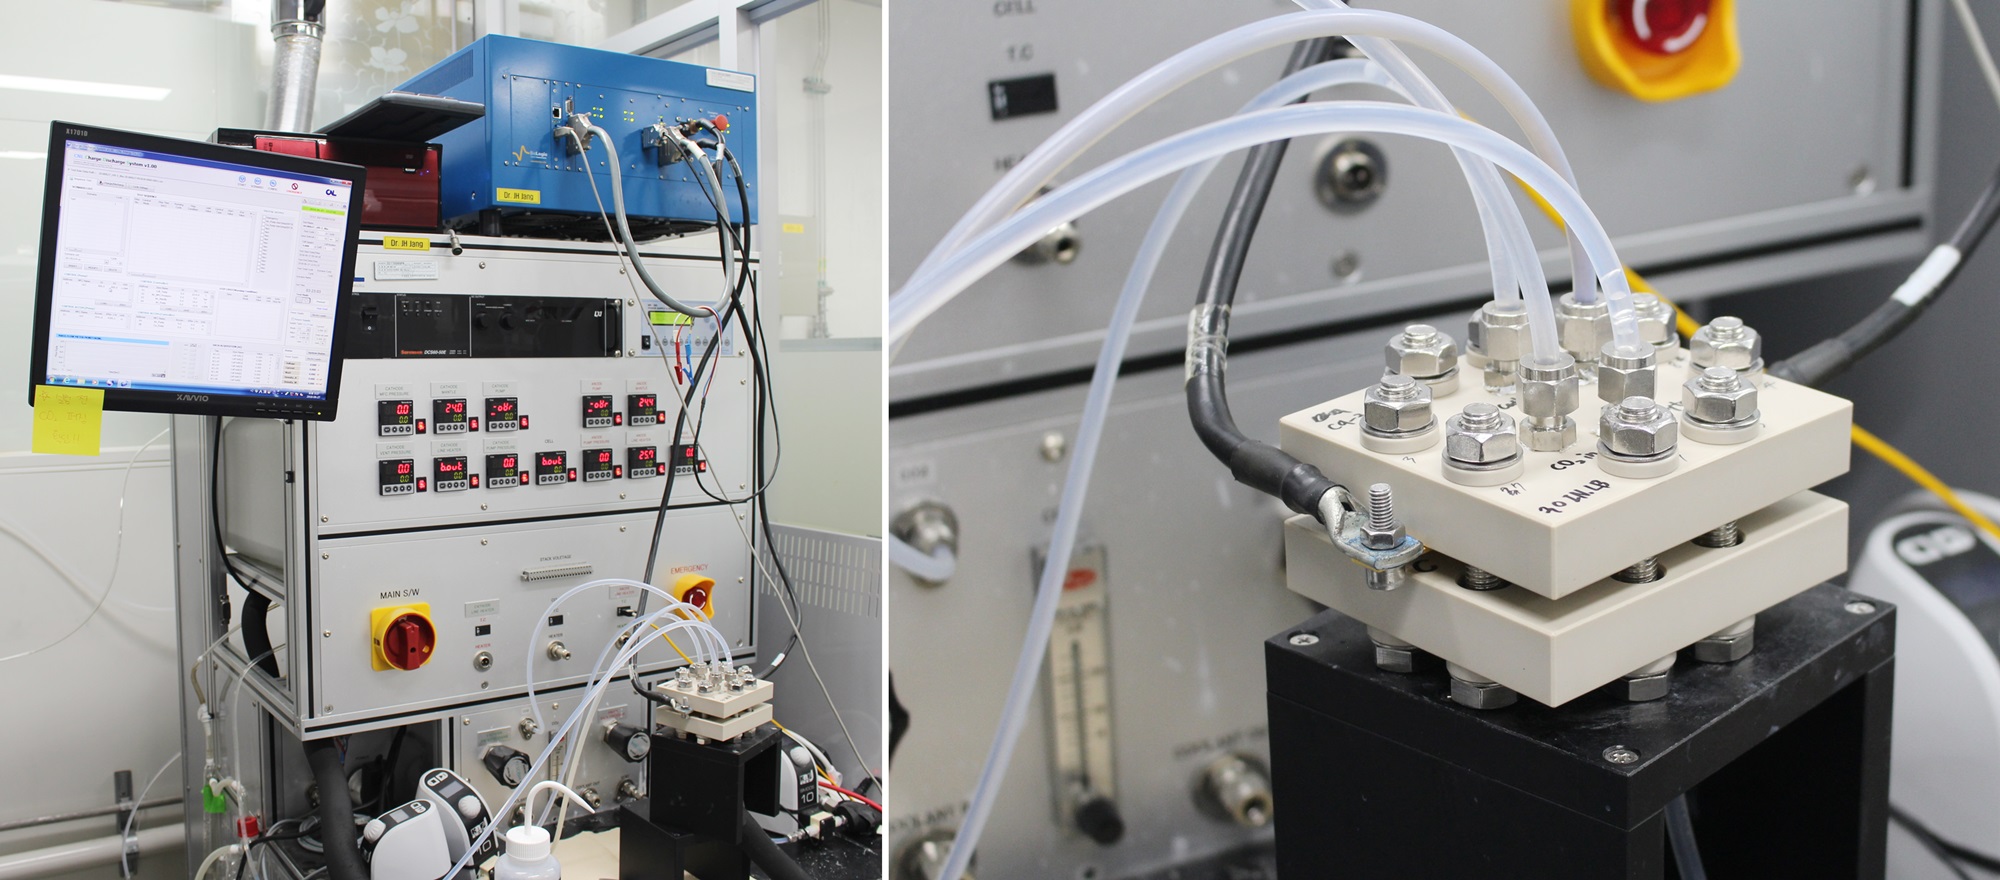 (왼쪽)이산화탄소 전환 연구에 사용하는 장치. 위에 있는 파란색 장치가 전기를 공급하고 반응기(오른쪽)에 이산화탄소를 주입하면 반응을 거쳐 일산화탄소가 생성되어 나온다. 일산화탄소가 얼마나 생성됐는지 분석할 수 있다. 가운데 장치는 온도, 전류, 전압 등을 조절한다. <사진=한효정 기자>